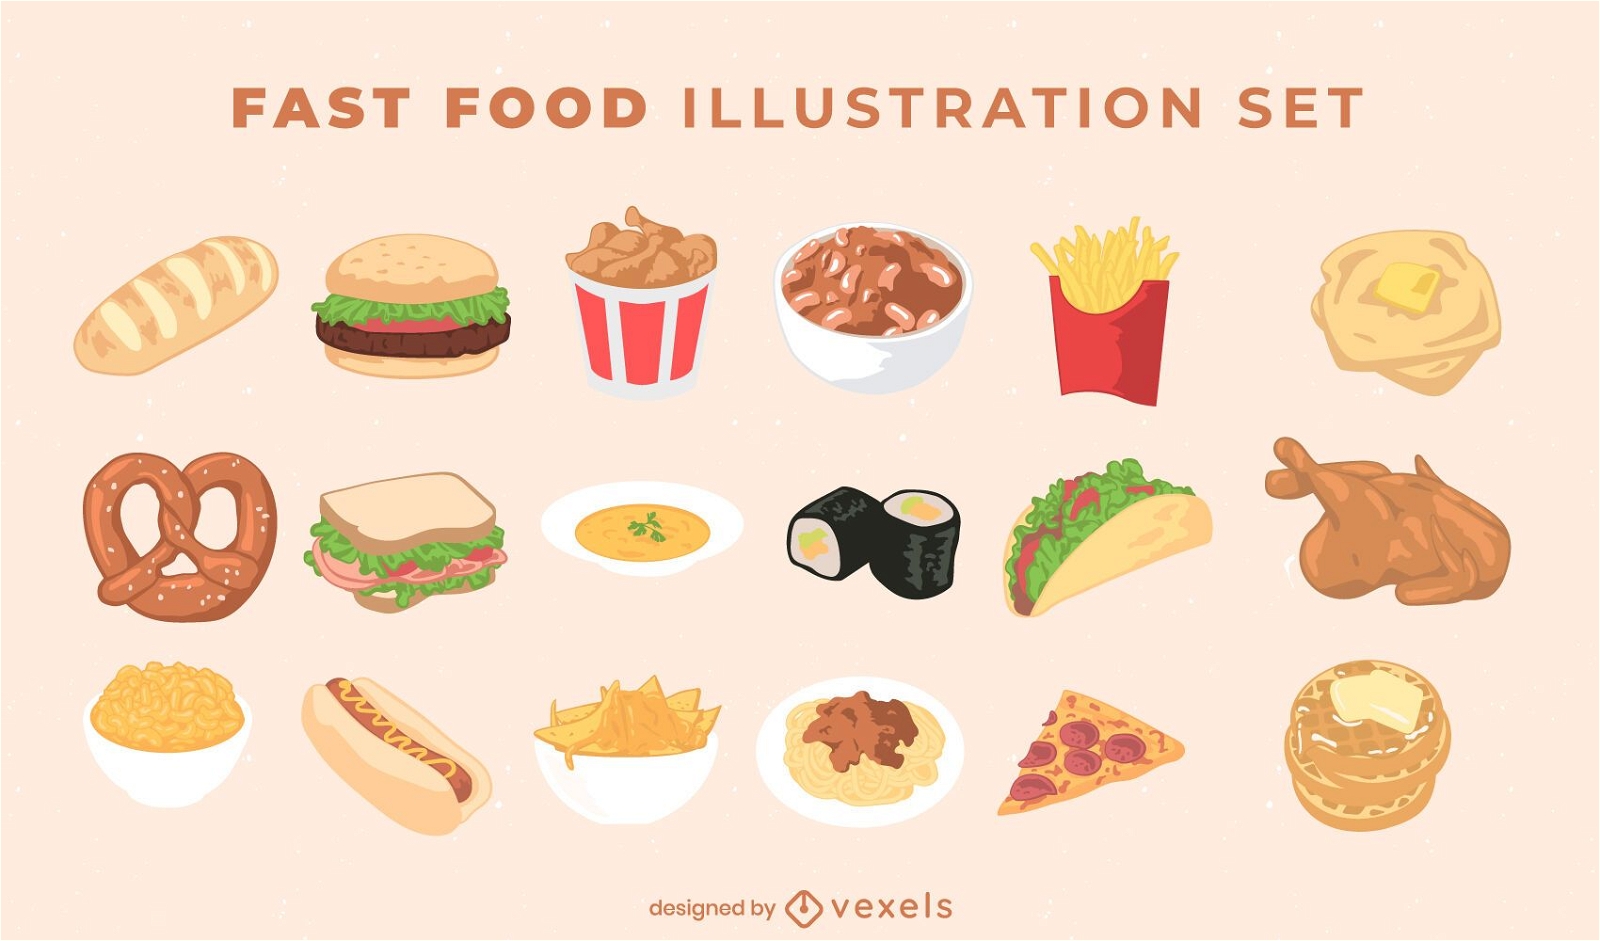 Fast food illustration pack